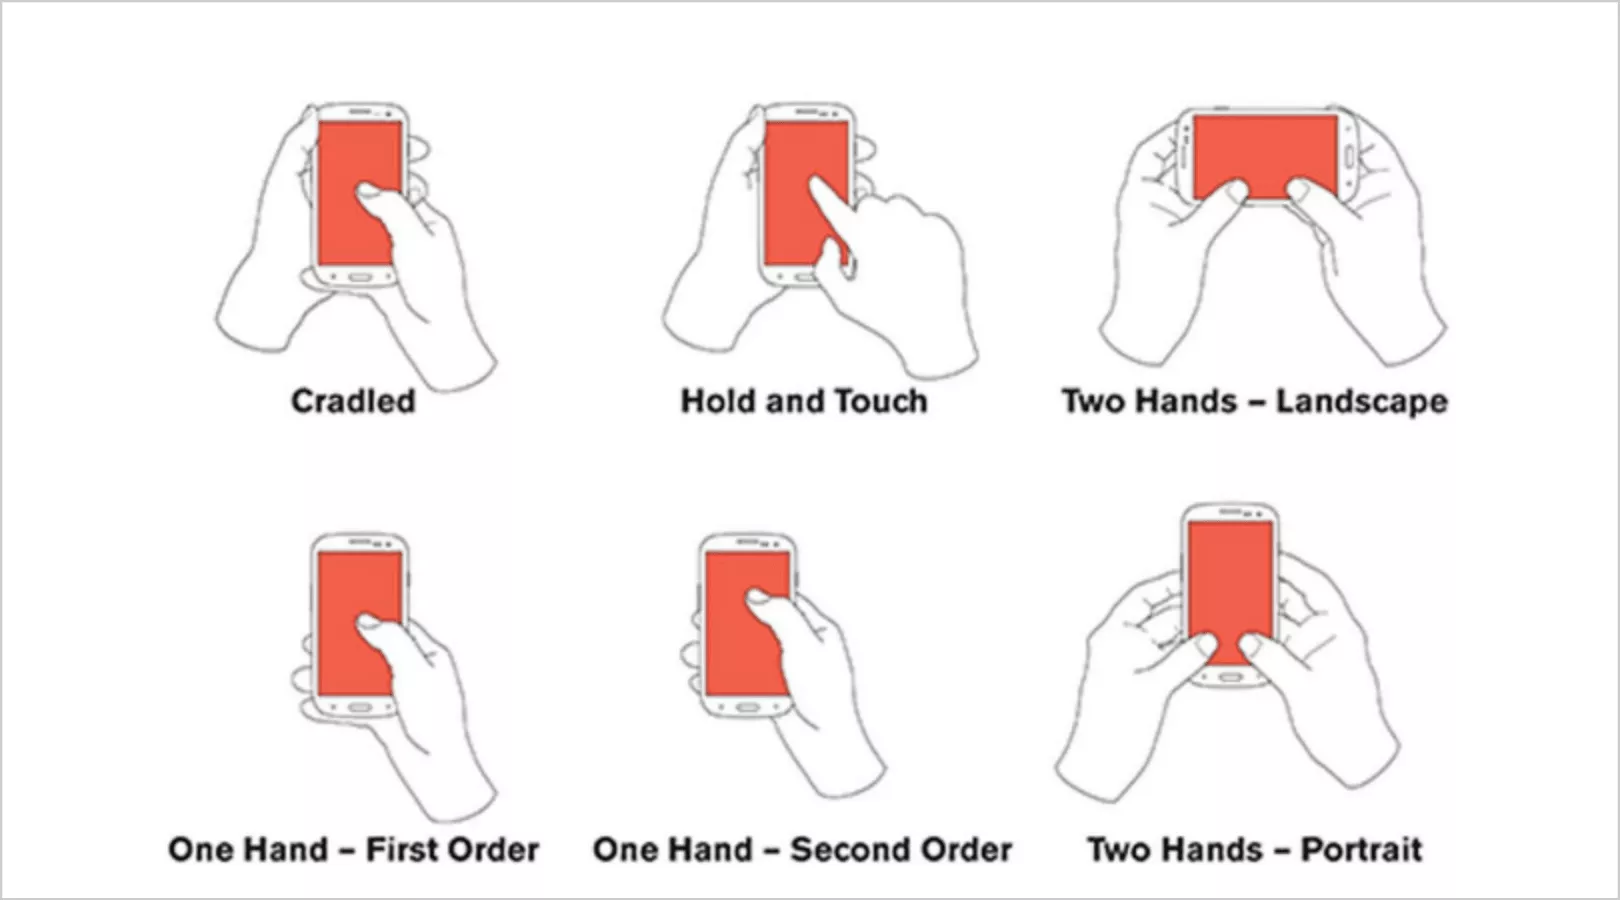 на самом деле есть шесть способов, которыми пользователи держат свои телефоны